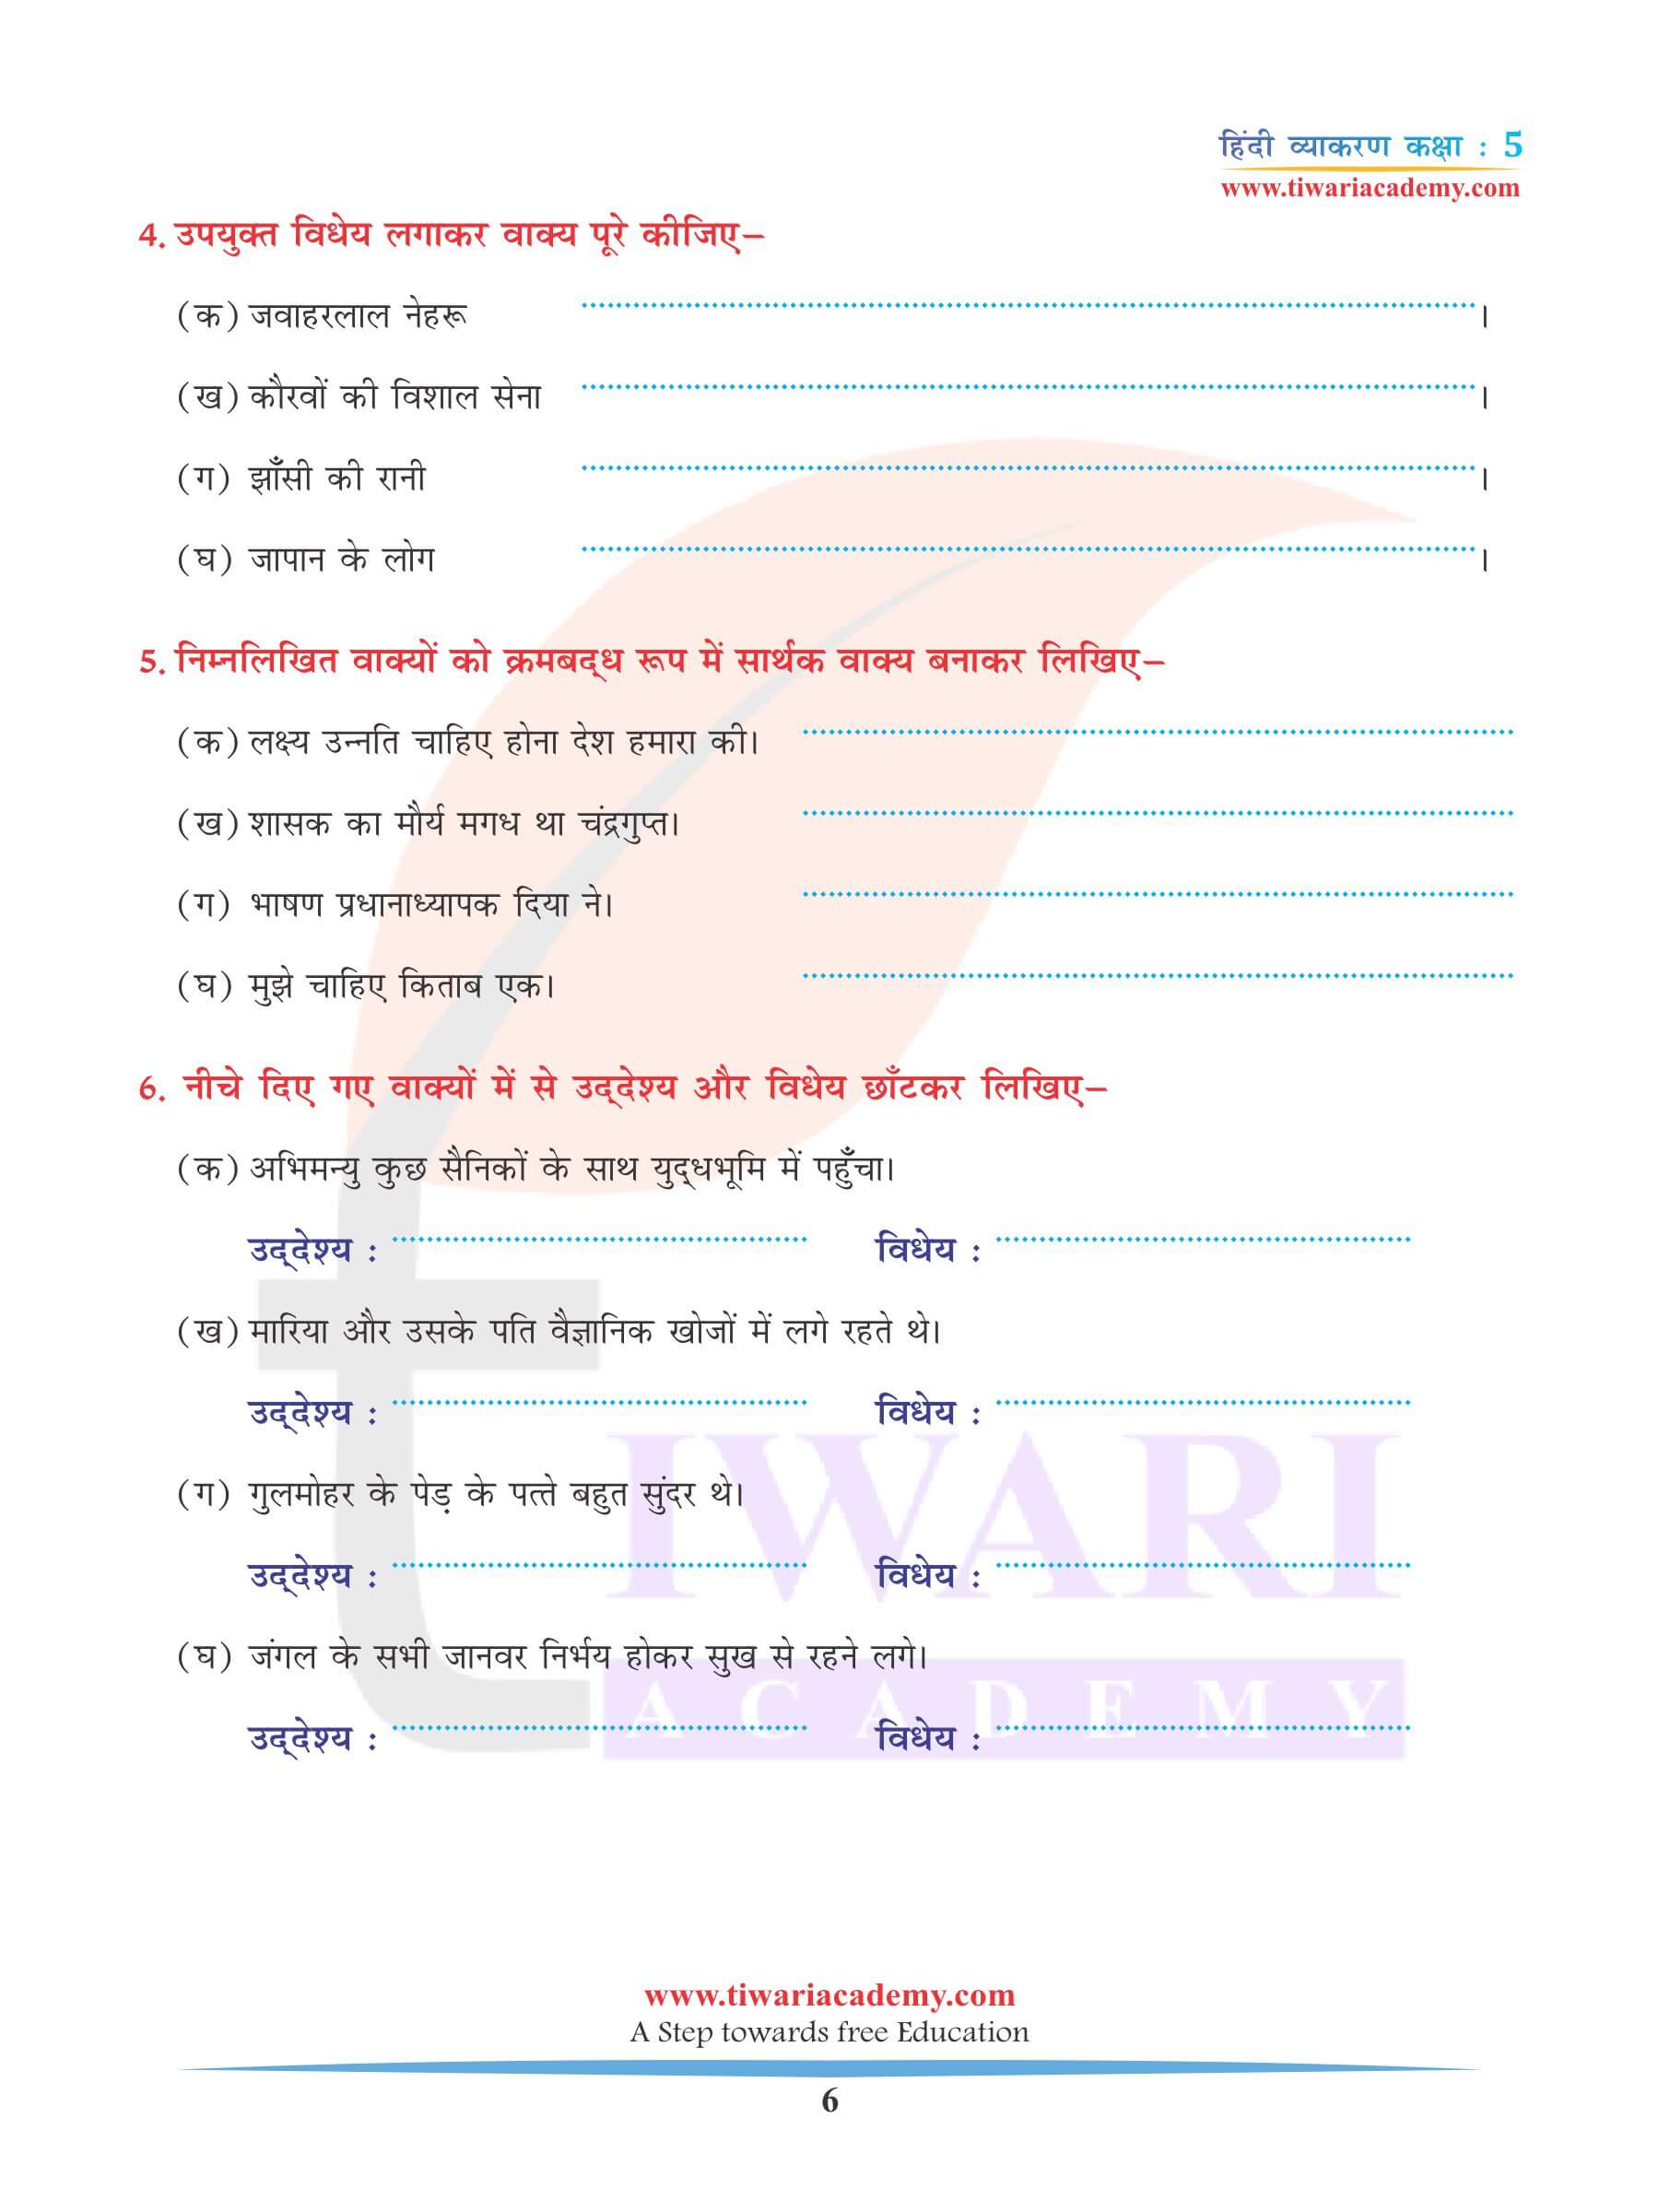 कक्षा 5 हिंदी व्याकरण अध्याय 11 वाक्य नोट्स